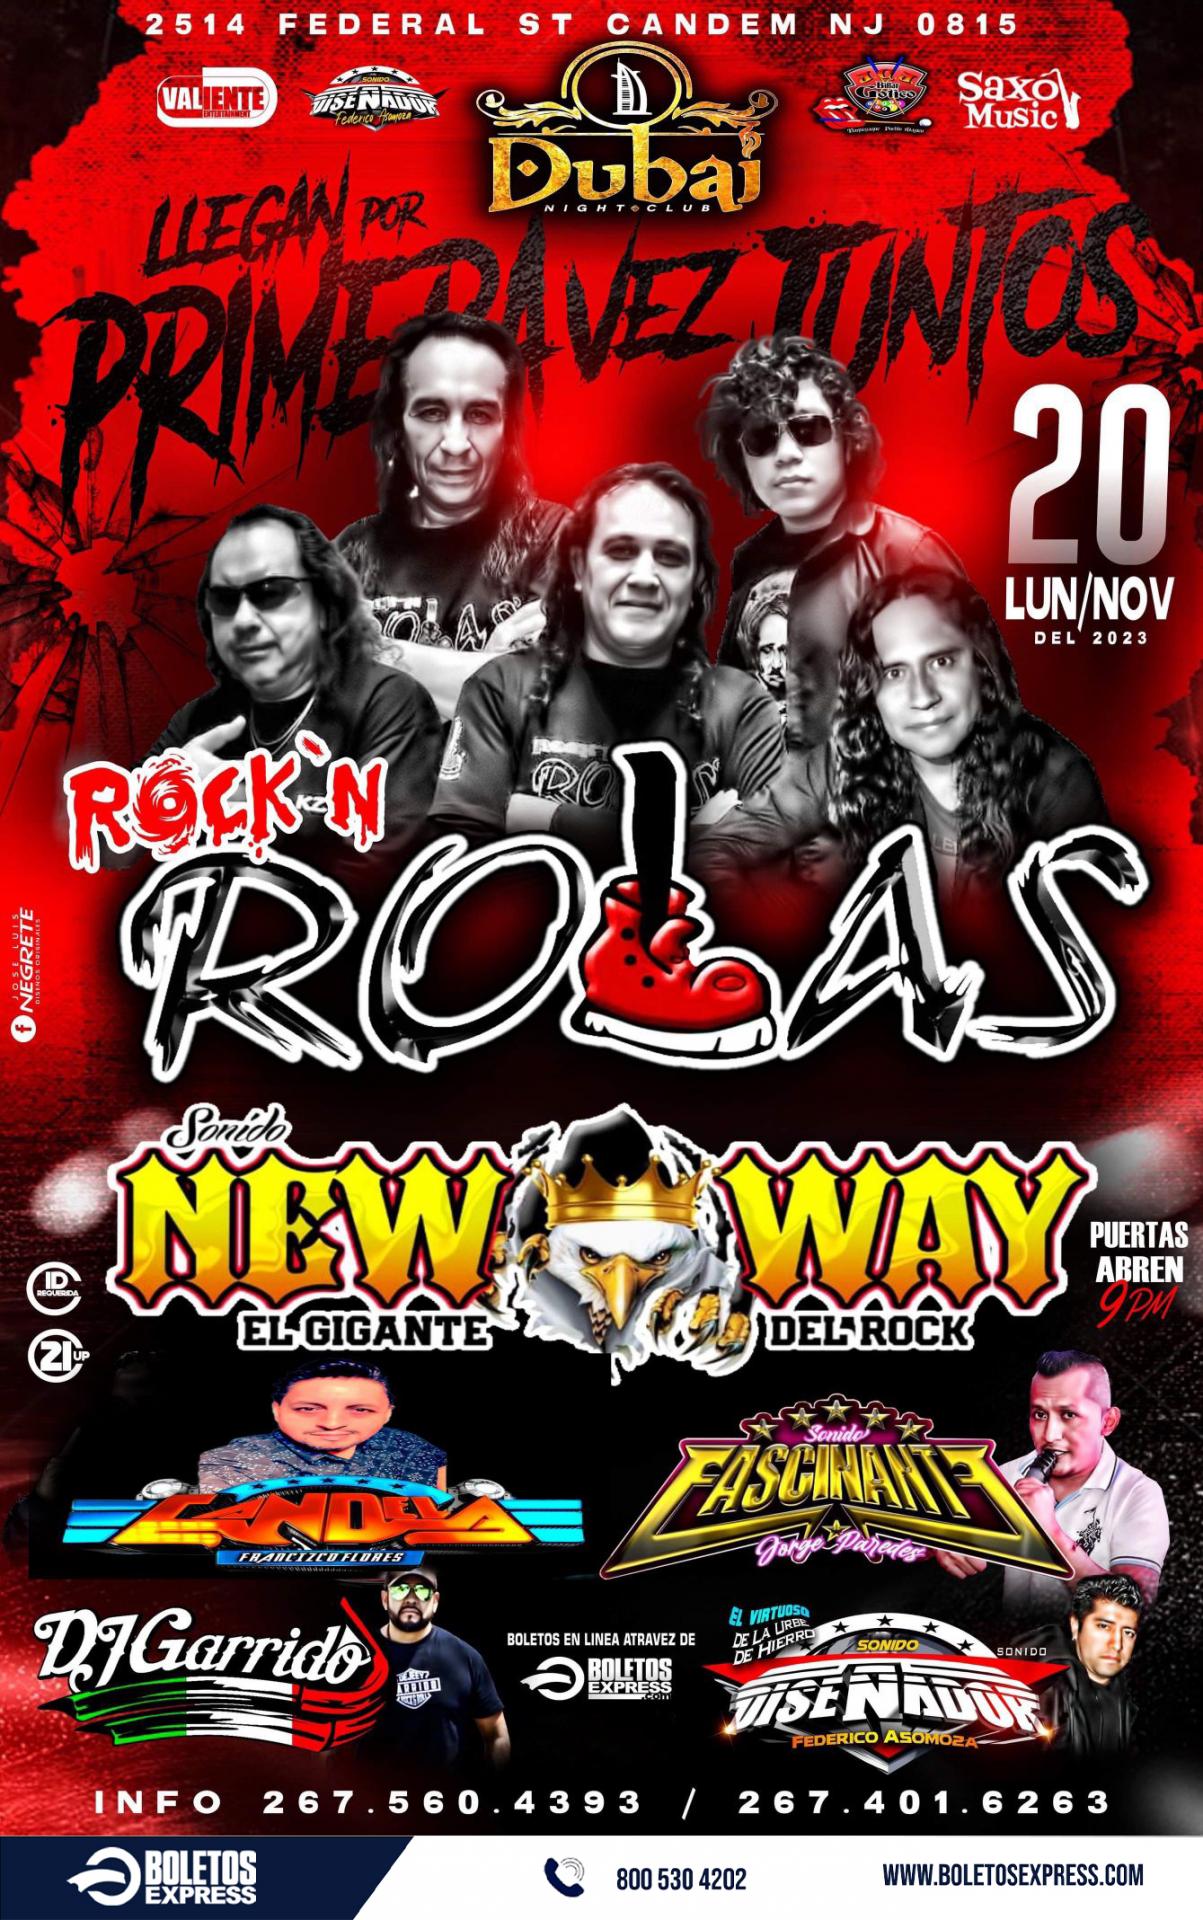 ROCK'N ROLAS & SONIDO NEW WAY